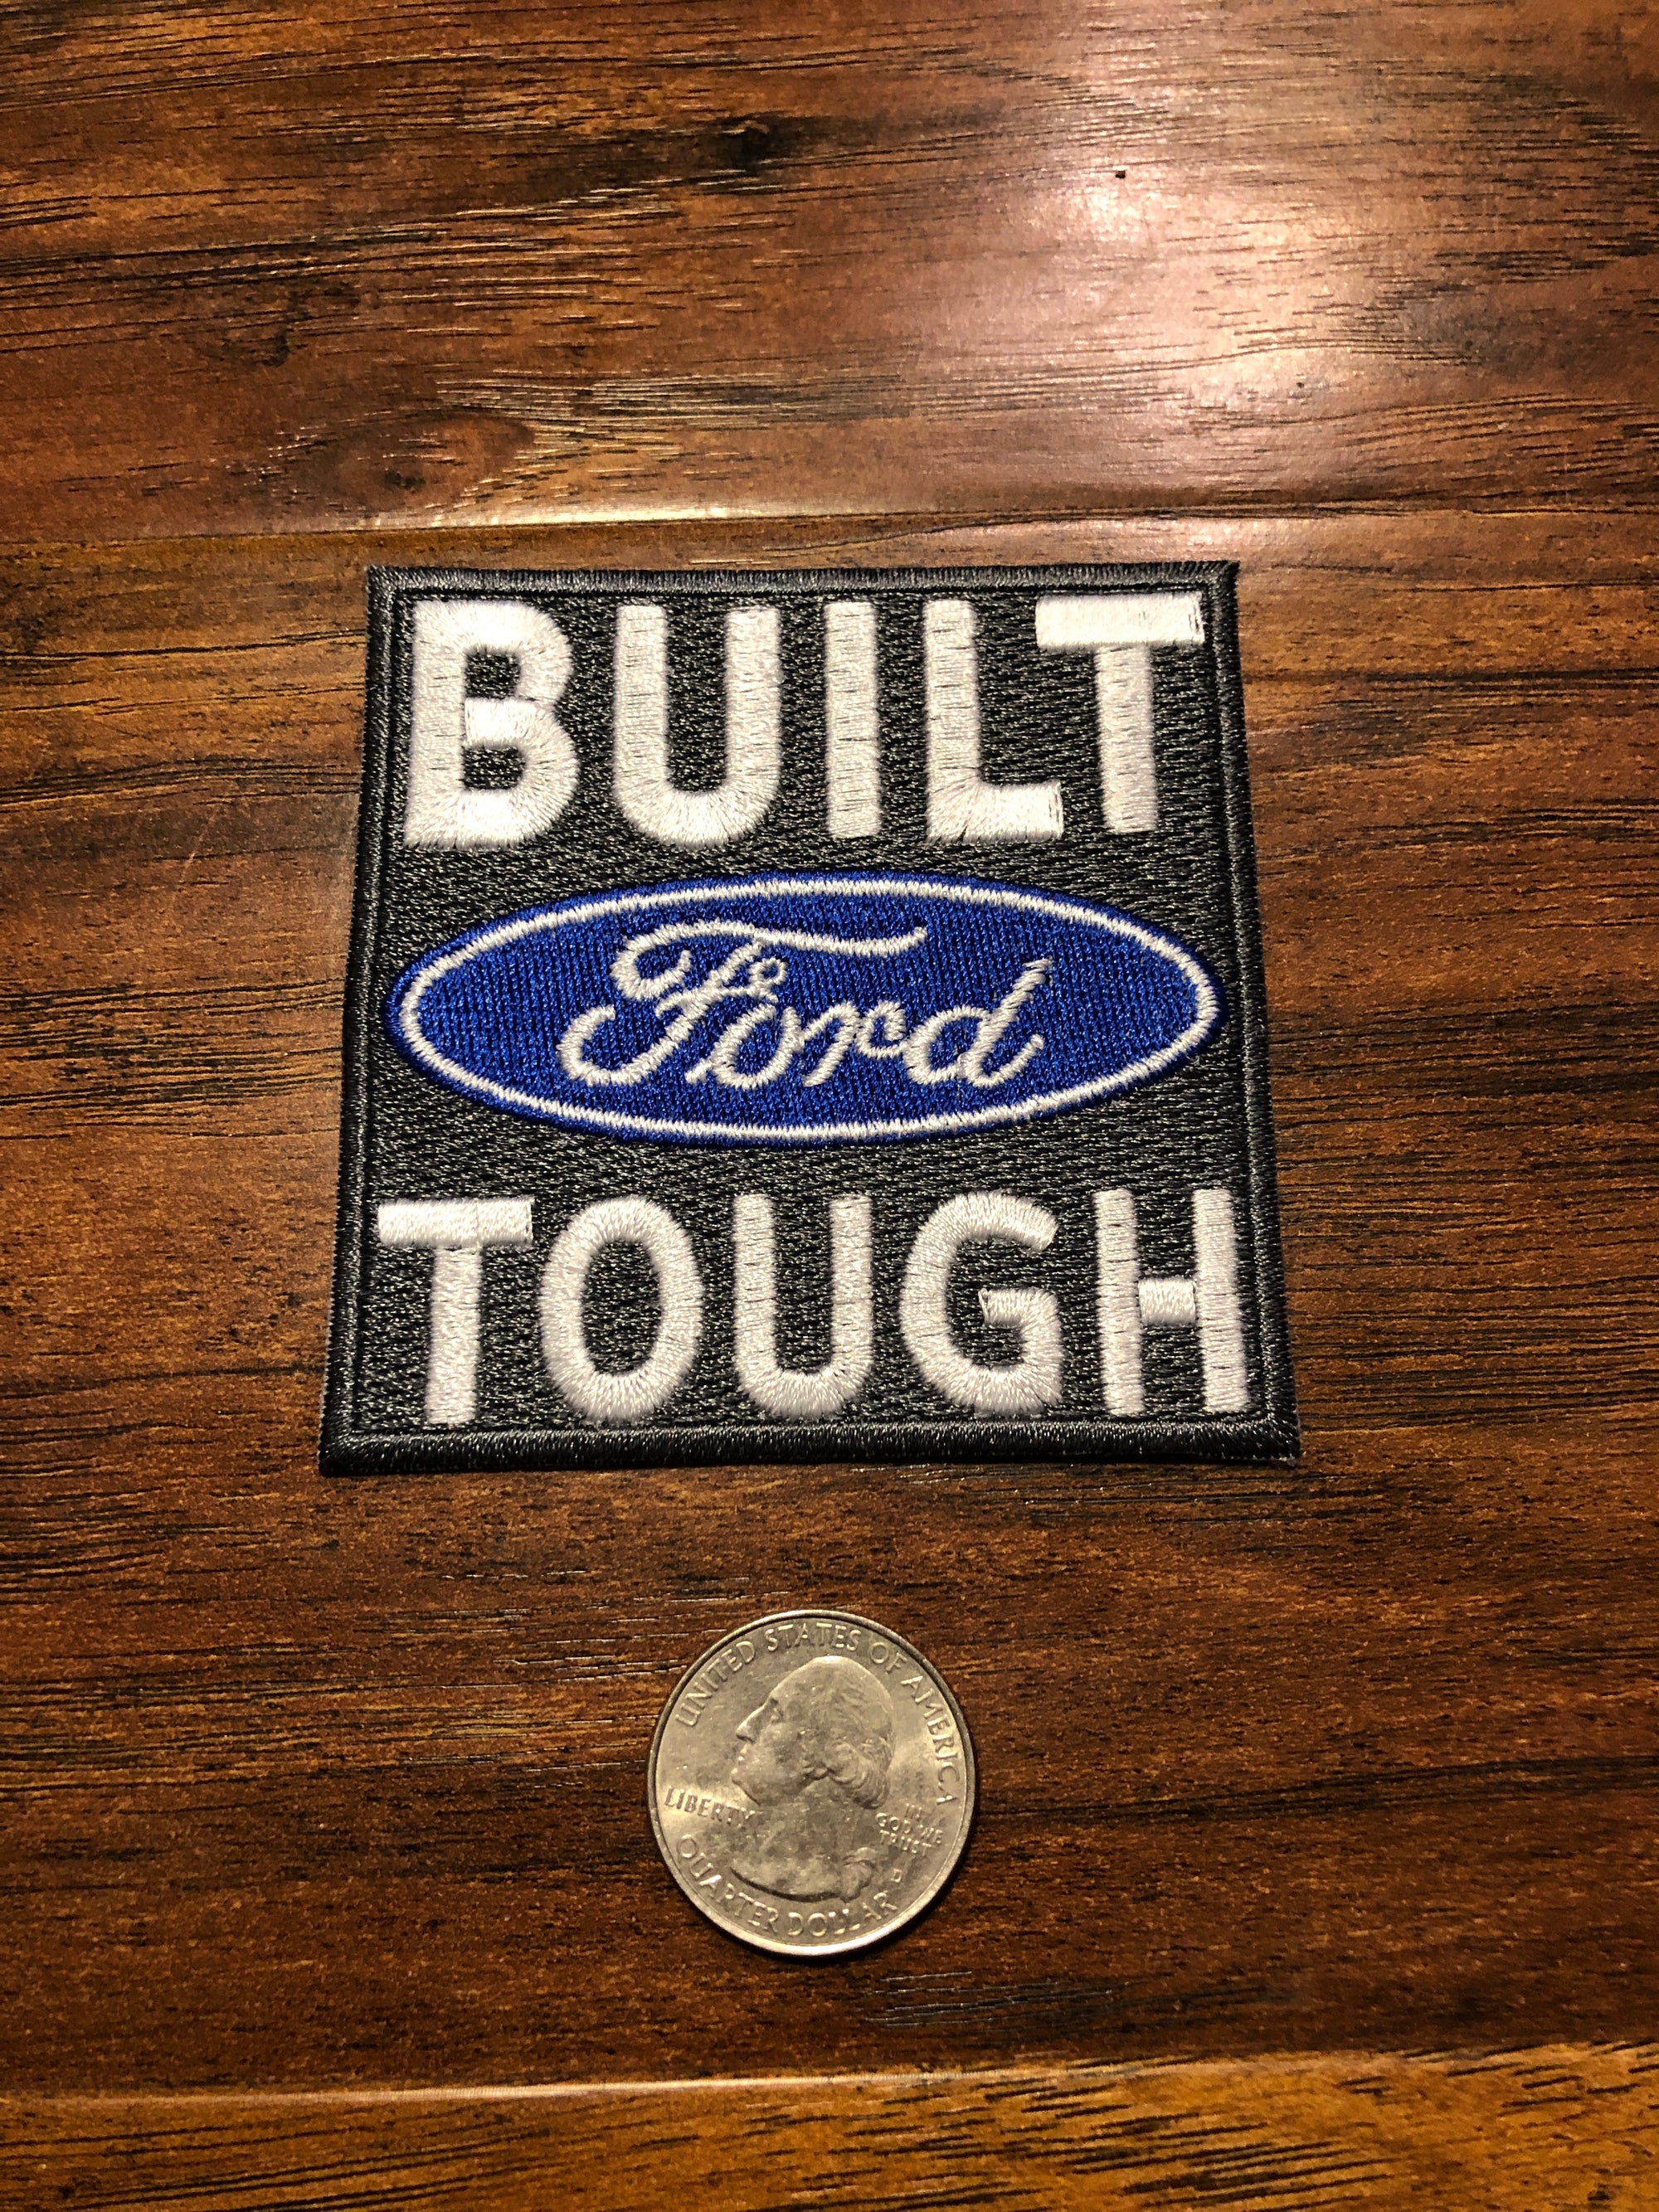 Built Ford Tough, Cars, Trucks